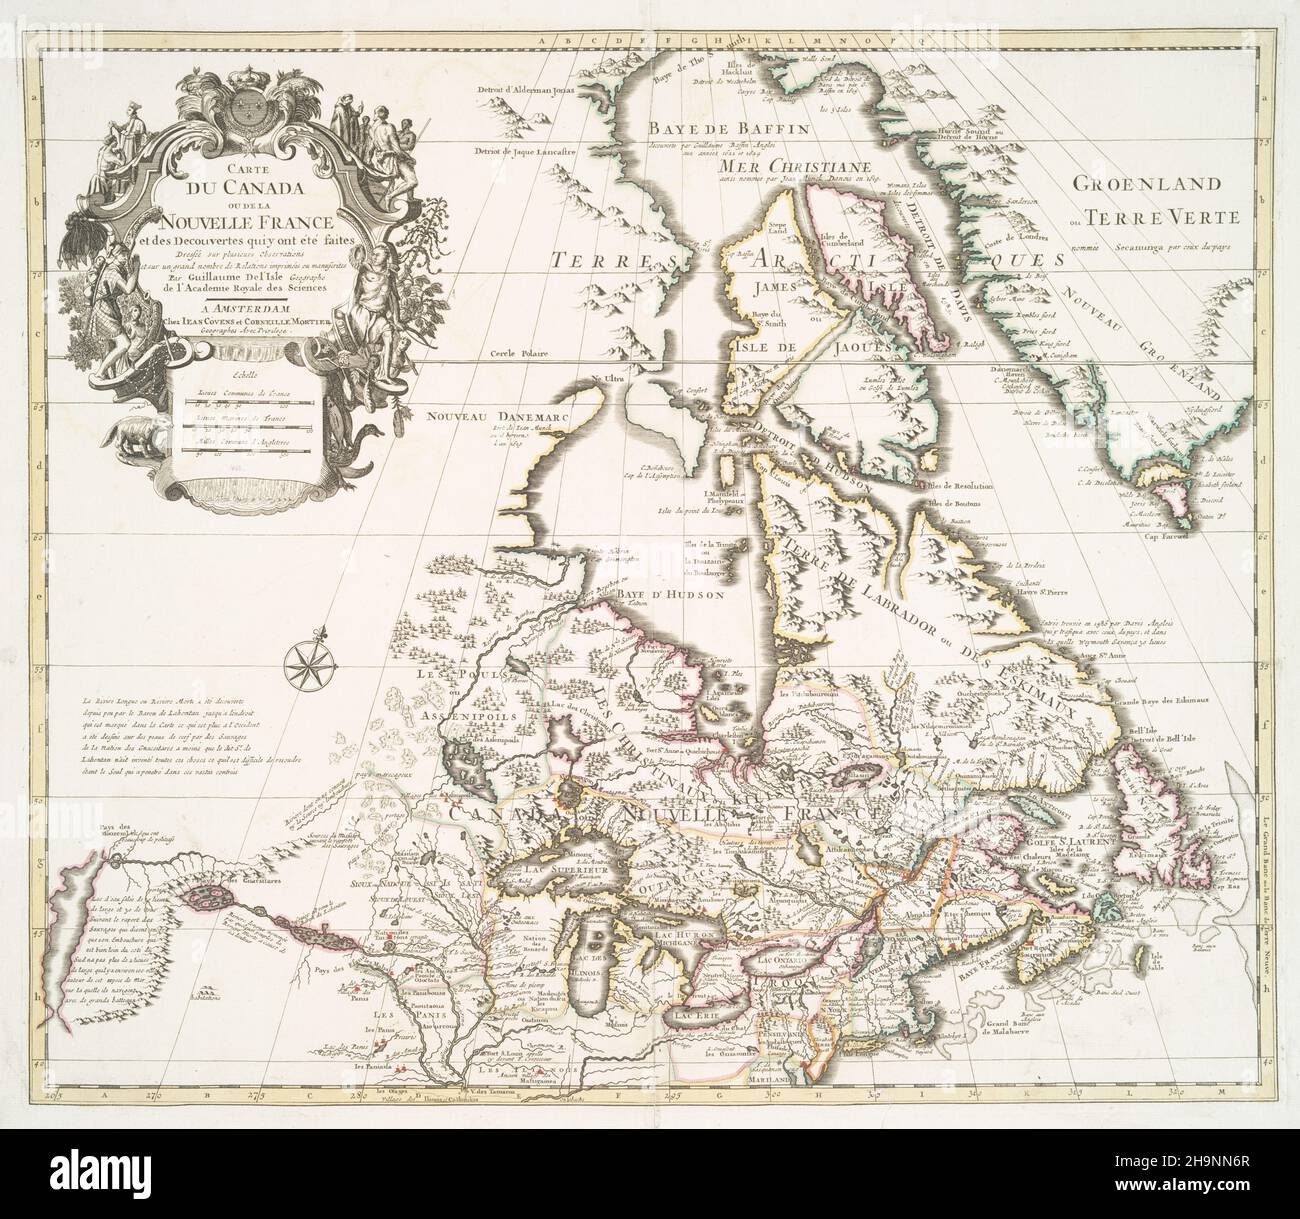 Carte du dix-huitième siècle du Canada et de la Nouvelle-France vers 1730 Banque D'Images